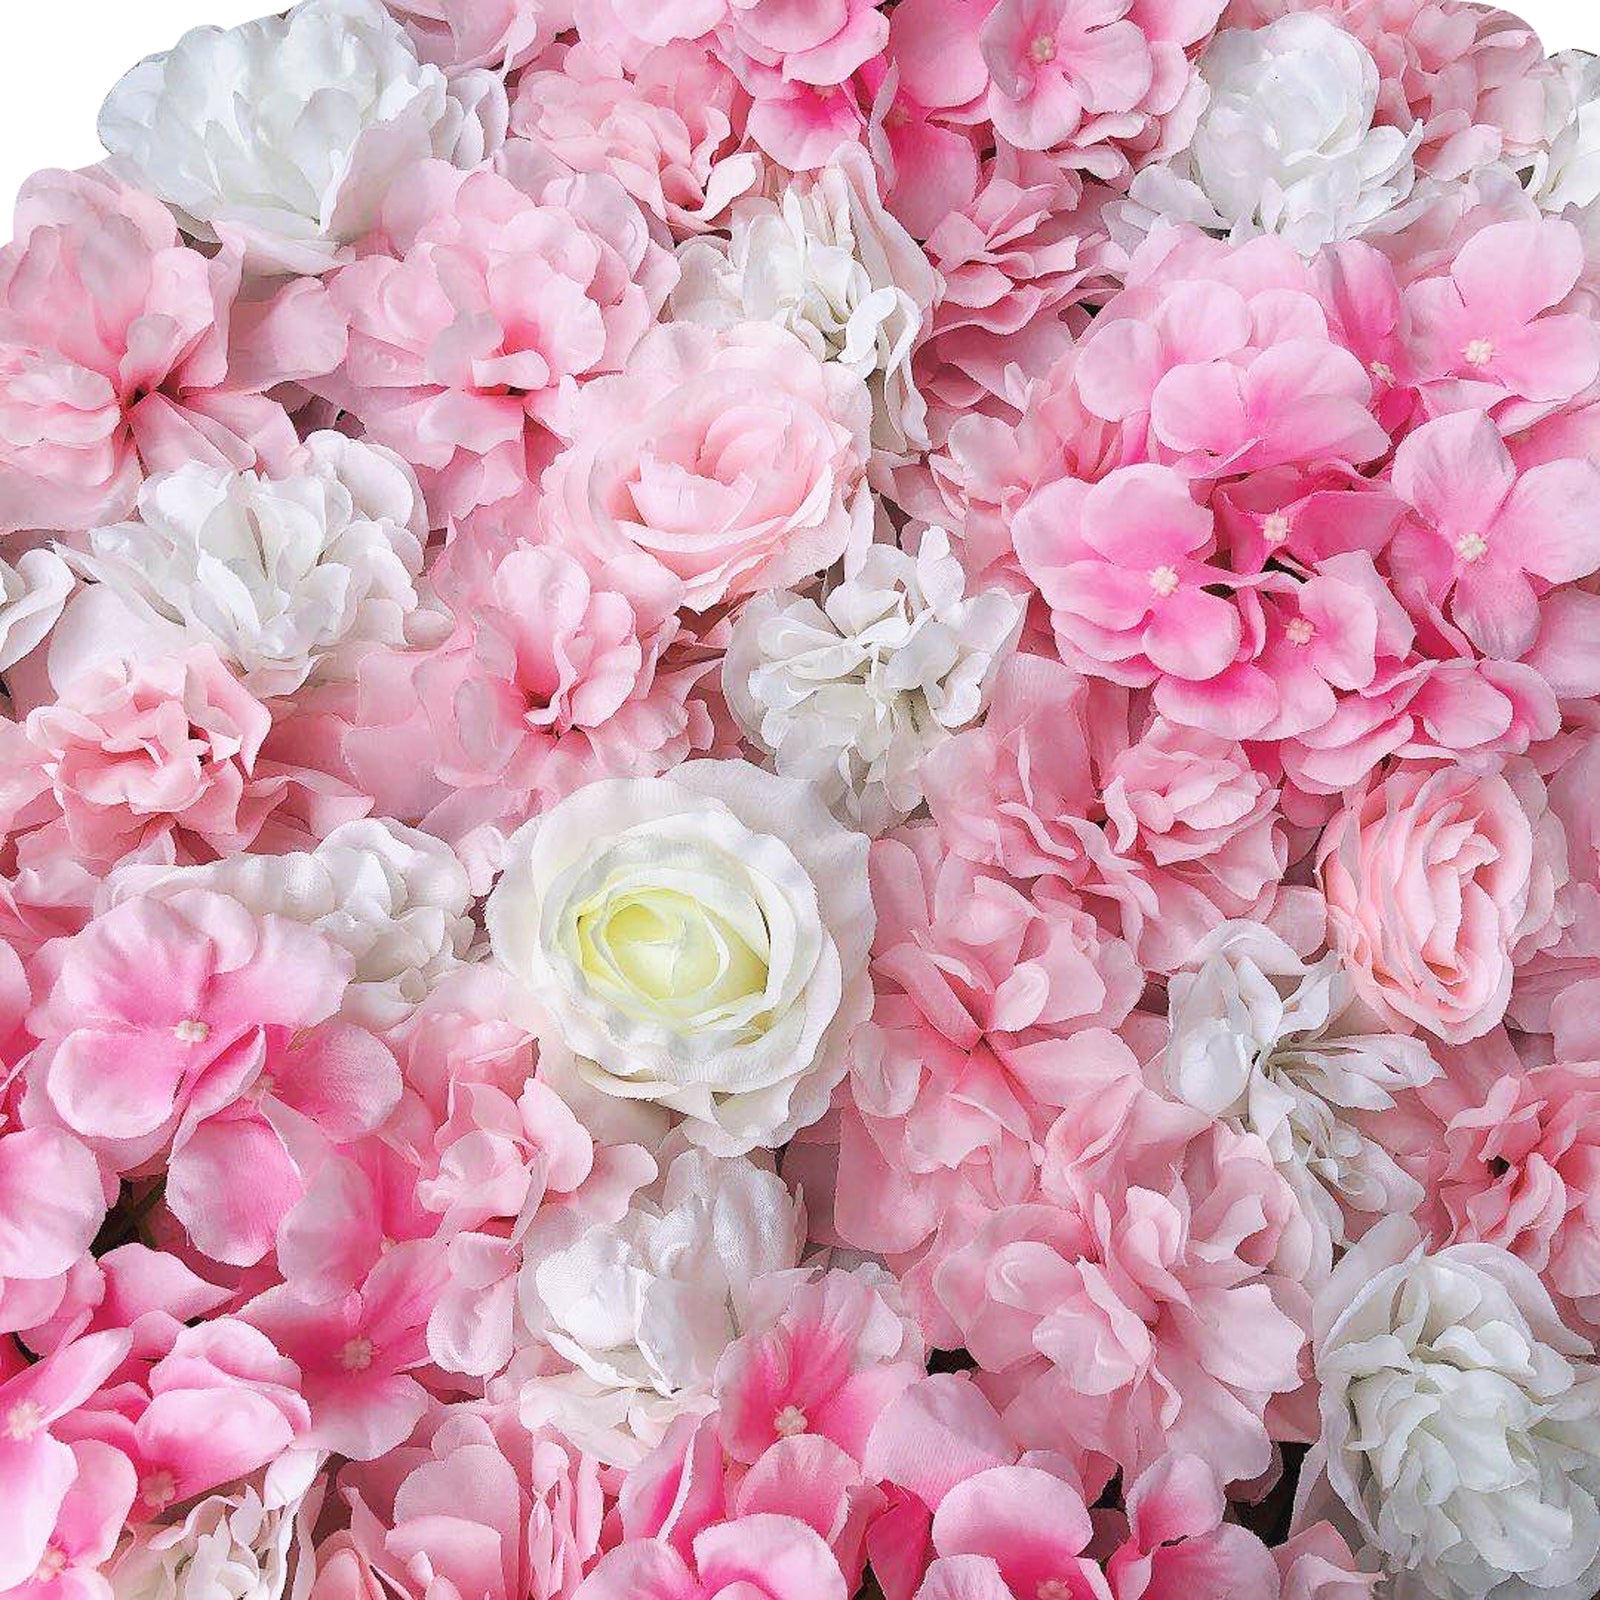 12x 40 * 60cm fiore artificiale muro rosa muro fai da te sfondo matrimonio (bianco dalia)